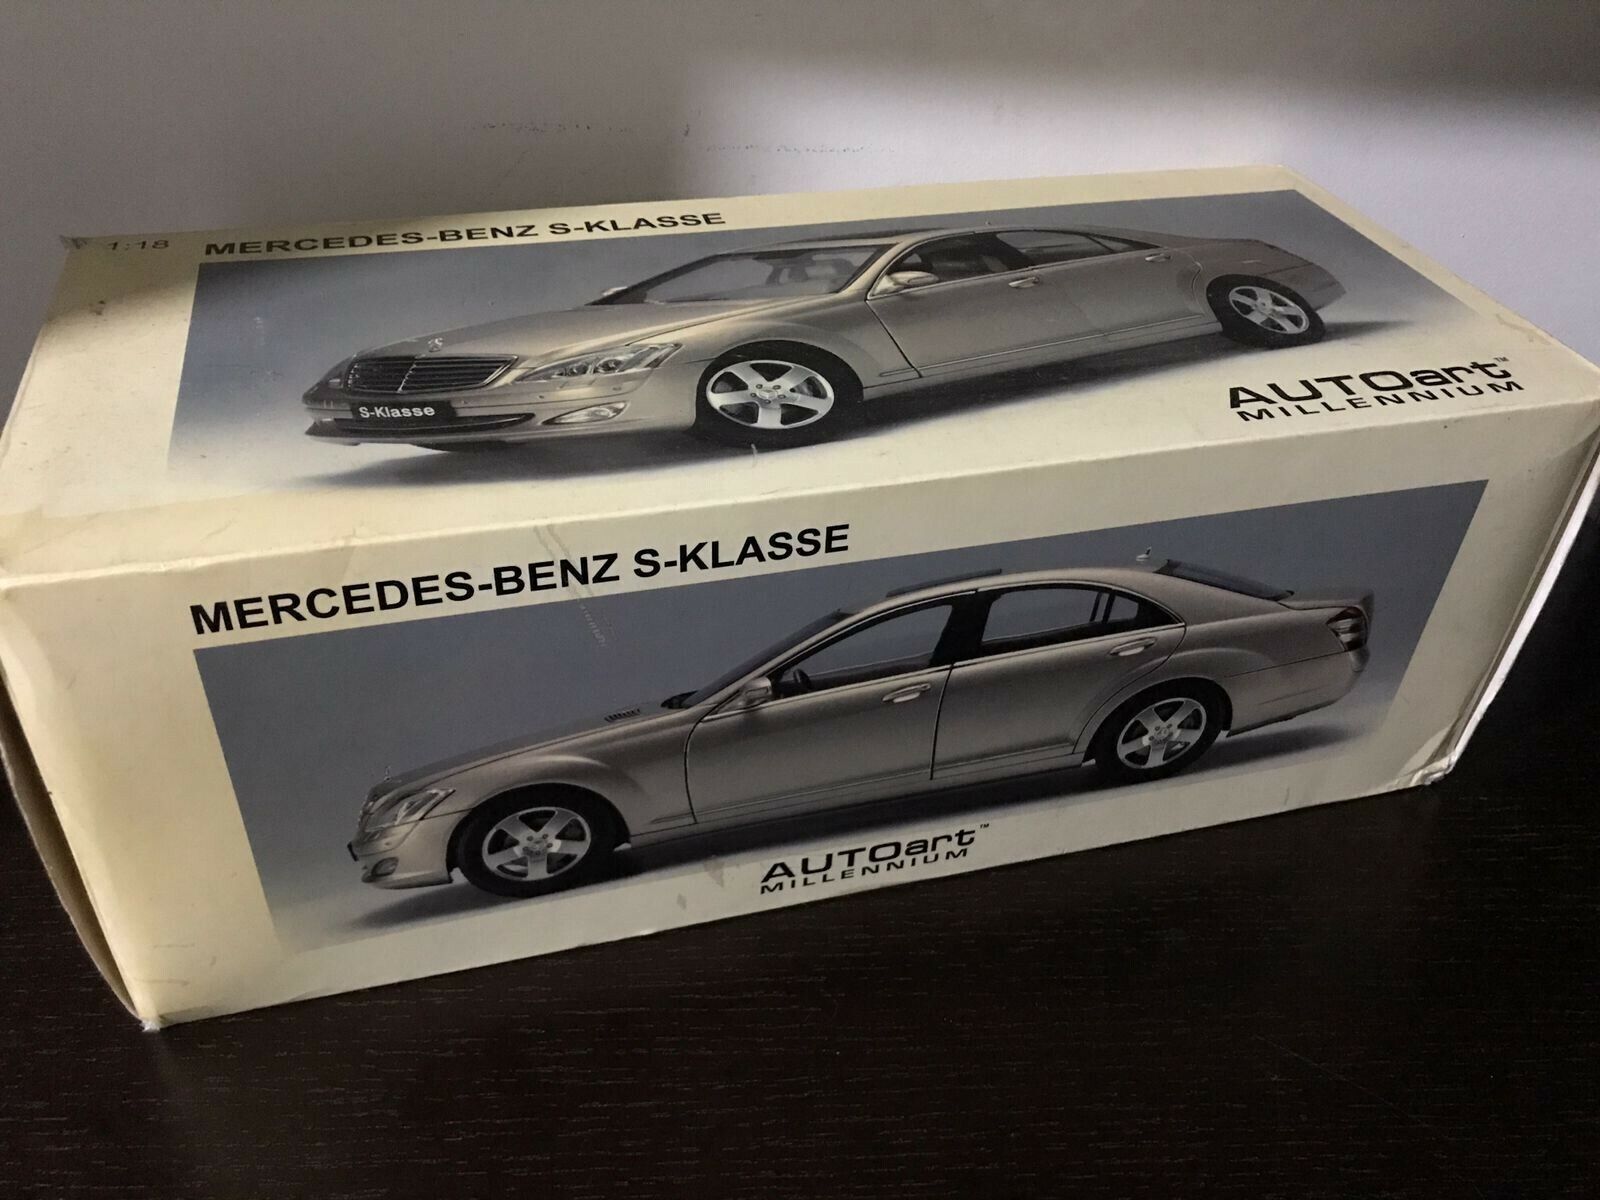 Autoart Millenium Mercedes Benz S-Klass 1/18 Scale Diecast Model Car Rare